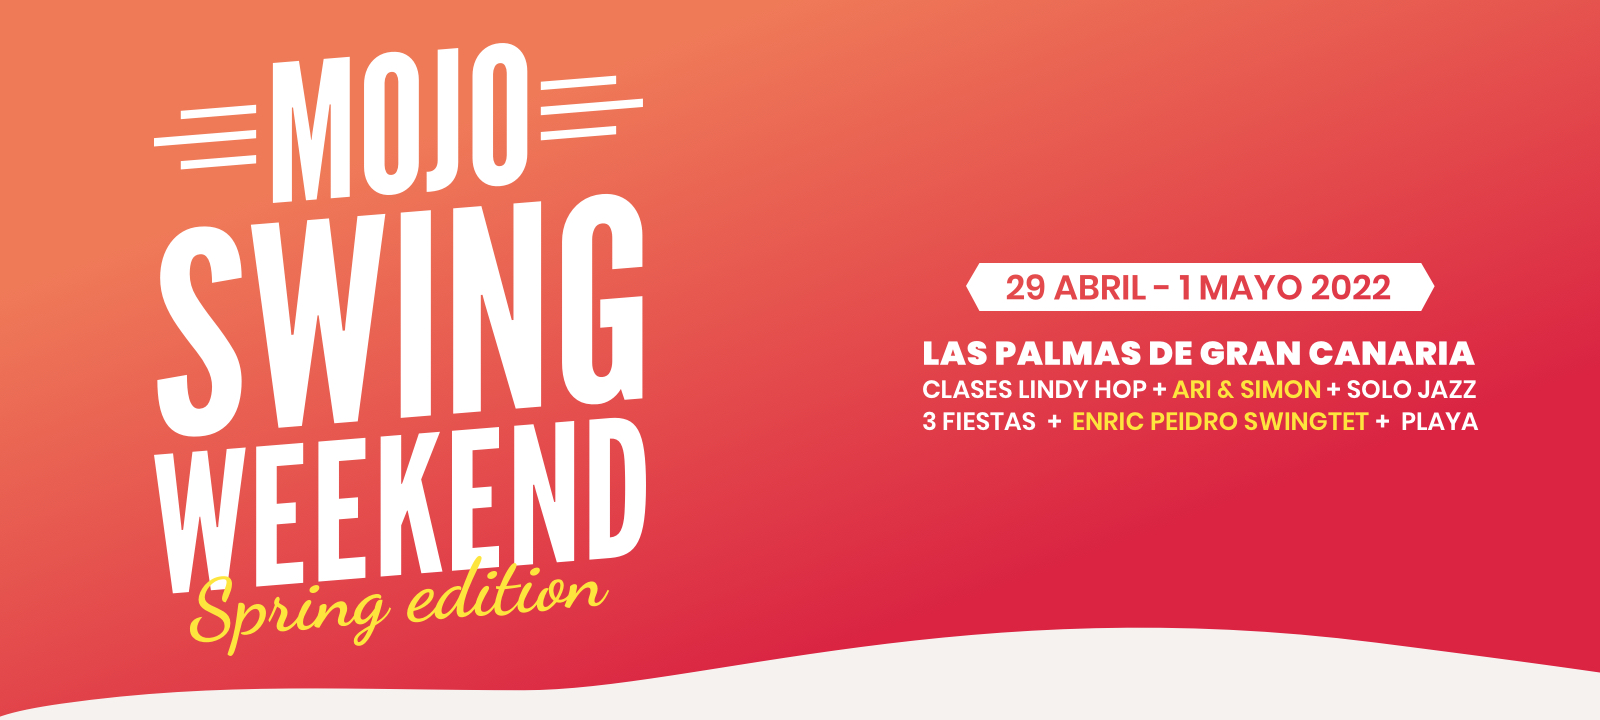 Mojo Swing Weekend se celebrará del 29 de abril al 1 de mayo en Las Palmas de Gran Canaria, España